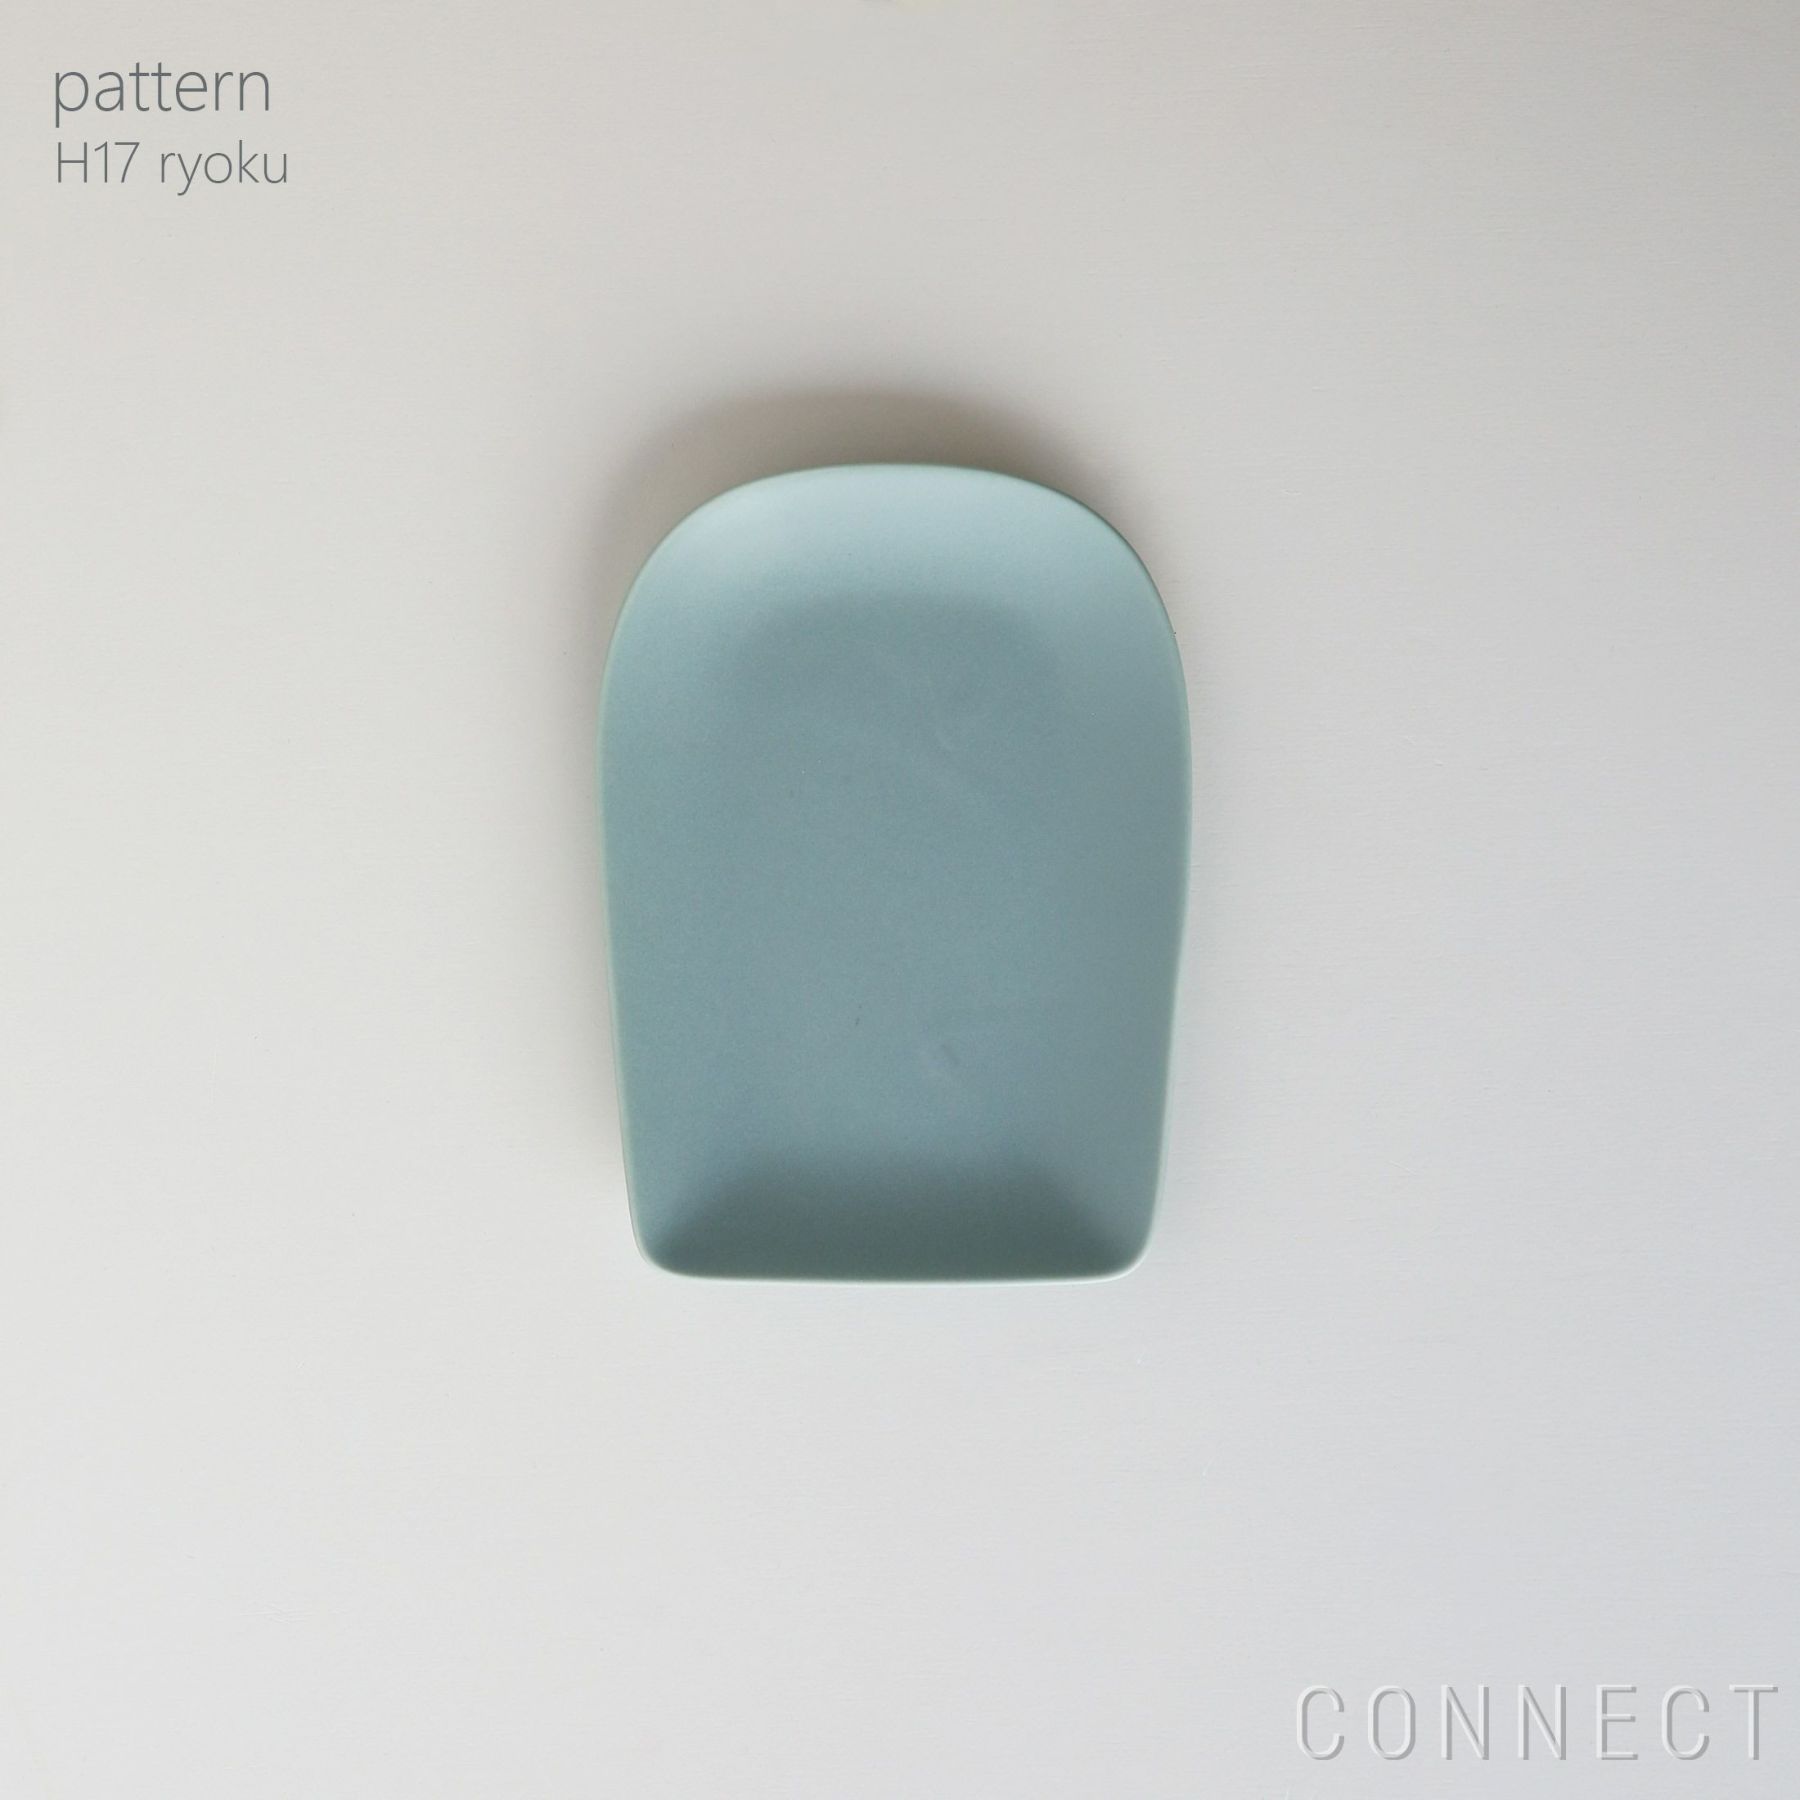 yumiko iihoshi porcelain （イイホシユミコ） / pattern（パターン） / H17 / ryoku